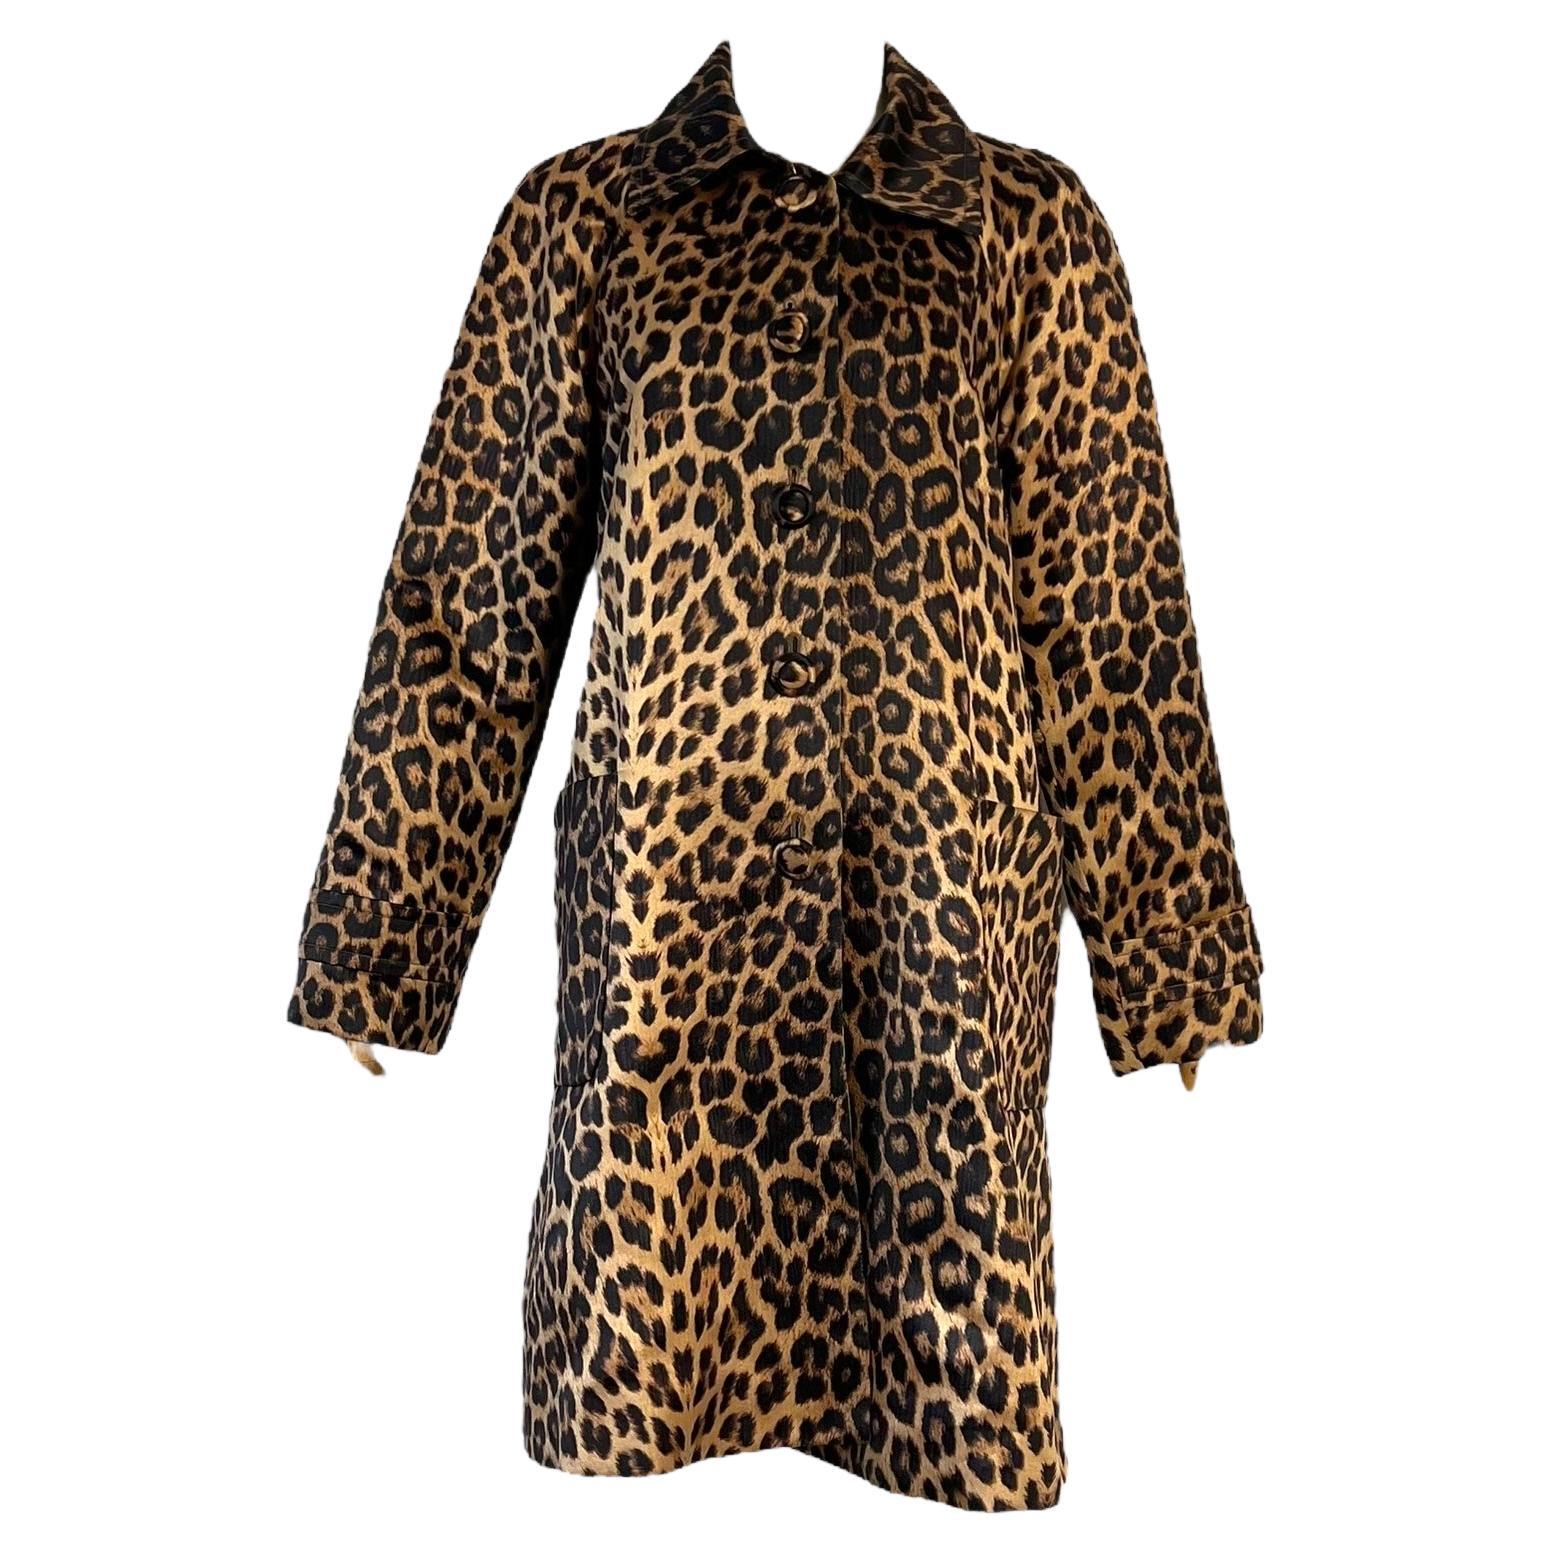 Yves Saint Laurent 90's leopard coat